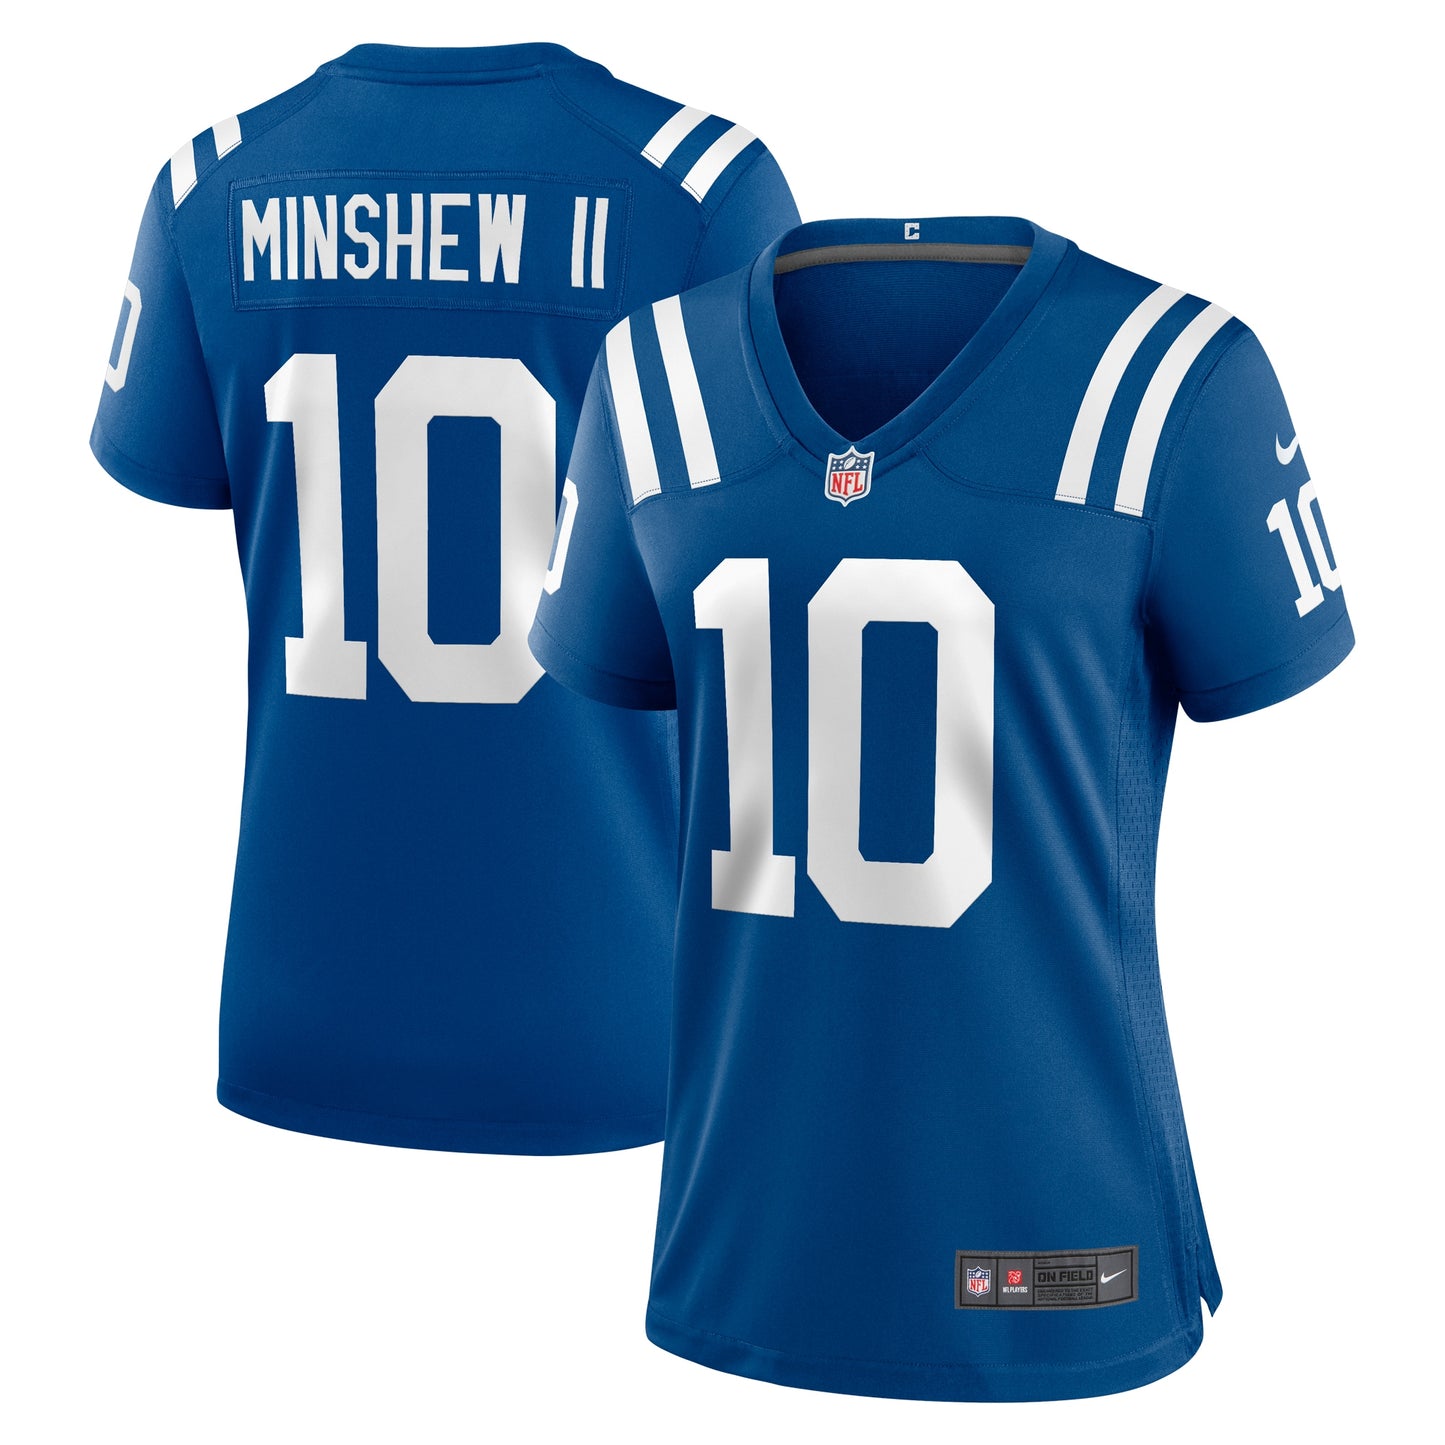 Gardner Minshew II Indianapolis Colts Nike Women's Game Jersey - Royal